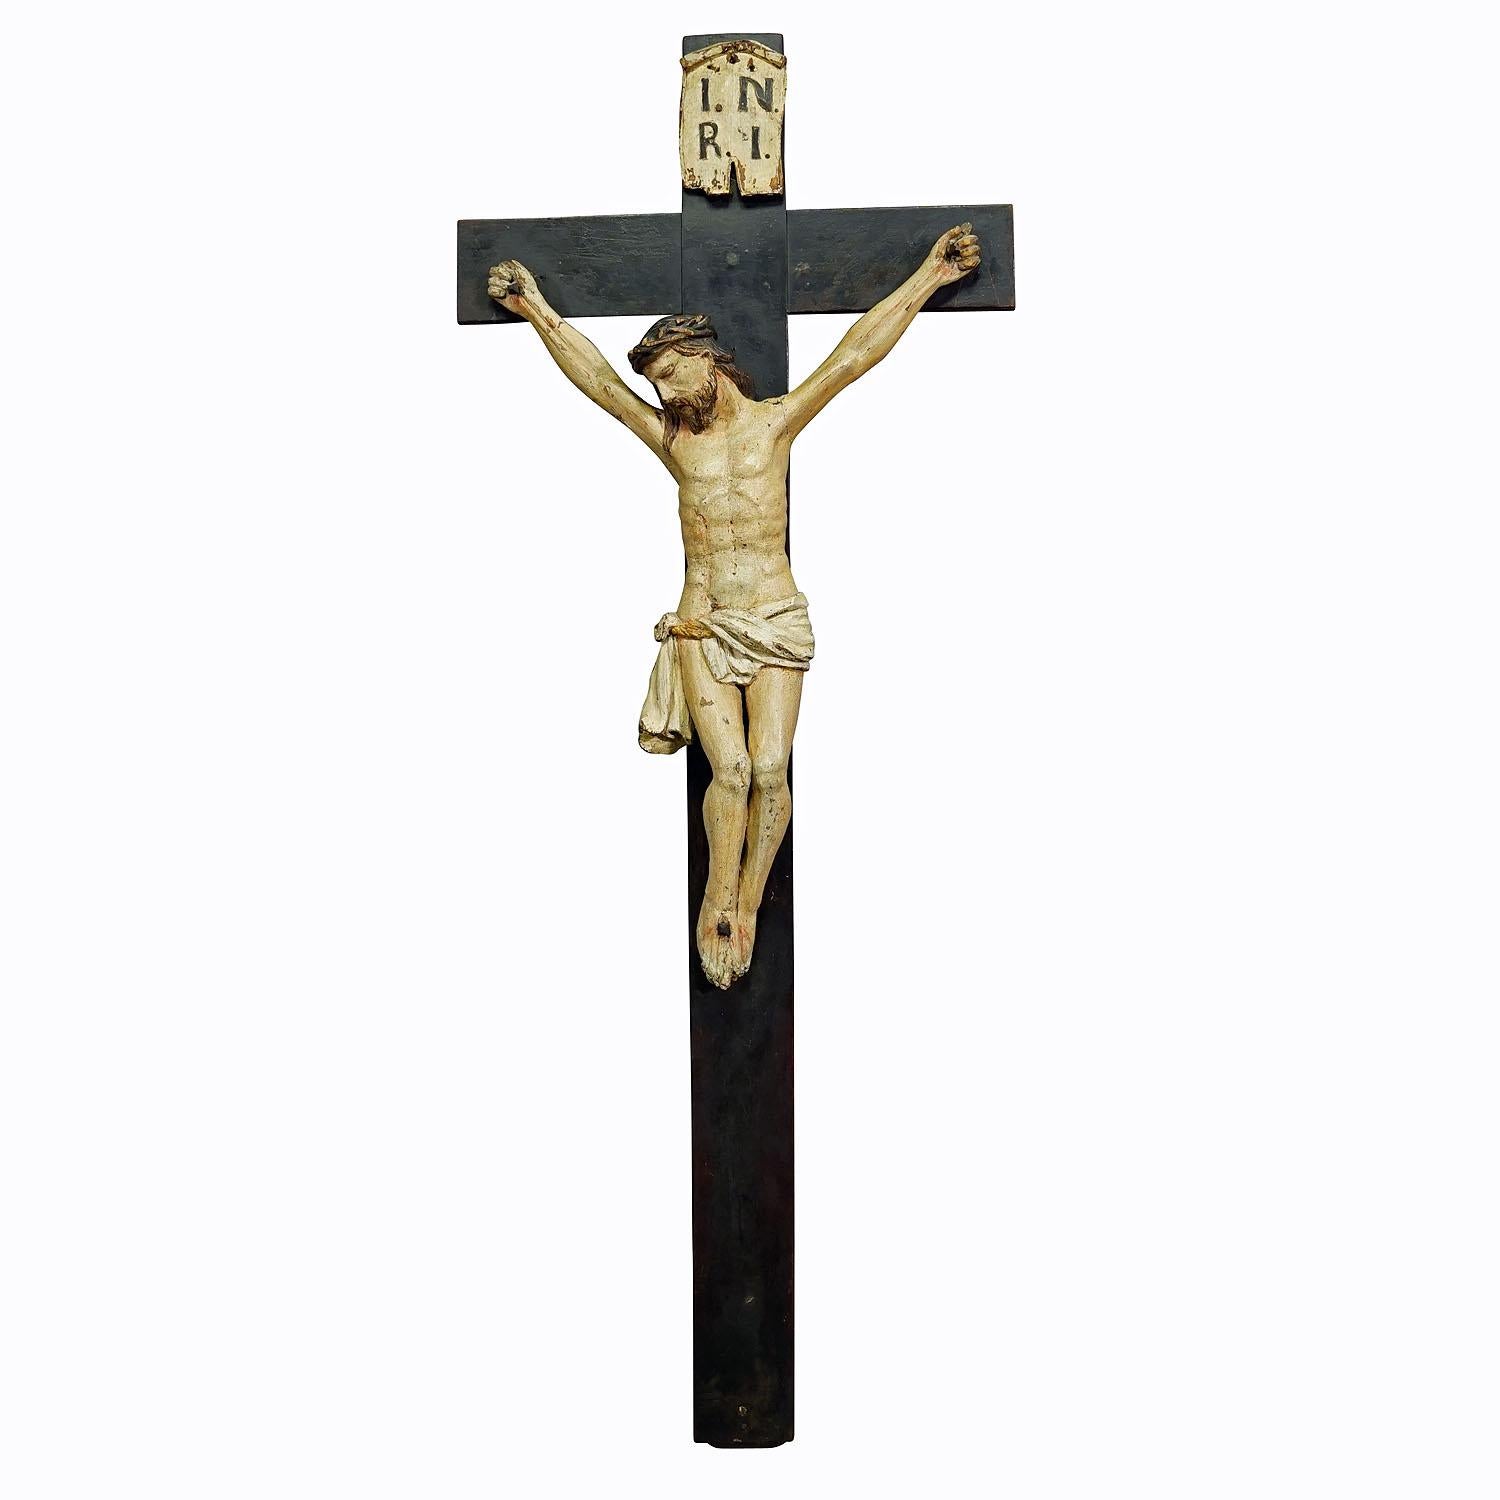 Bayerisches geschnitztes Kruzifix aus dem 19.

Antikes Kruzifix mit einer Skulptur des leidenden Christus am Kreuz, die mit handgeschnitzten Details und einer erstaunlichen Patina aufwartet. Handgeschnitzt in Bayern Ende des 19. Jahrhunderts. Der